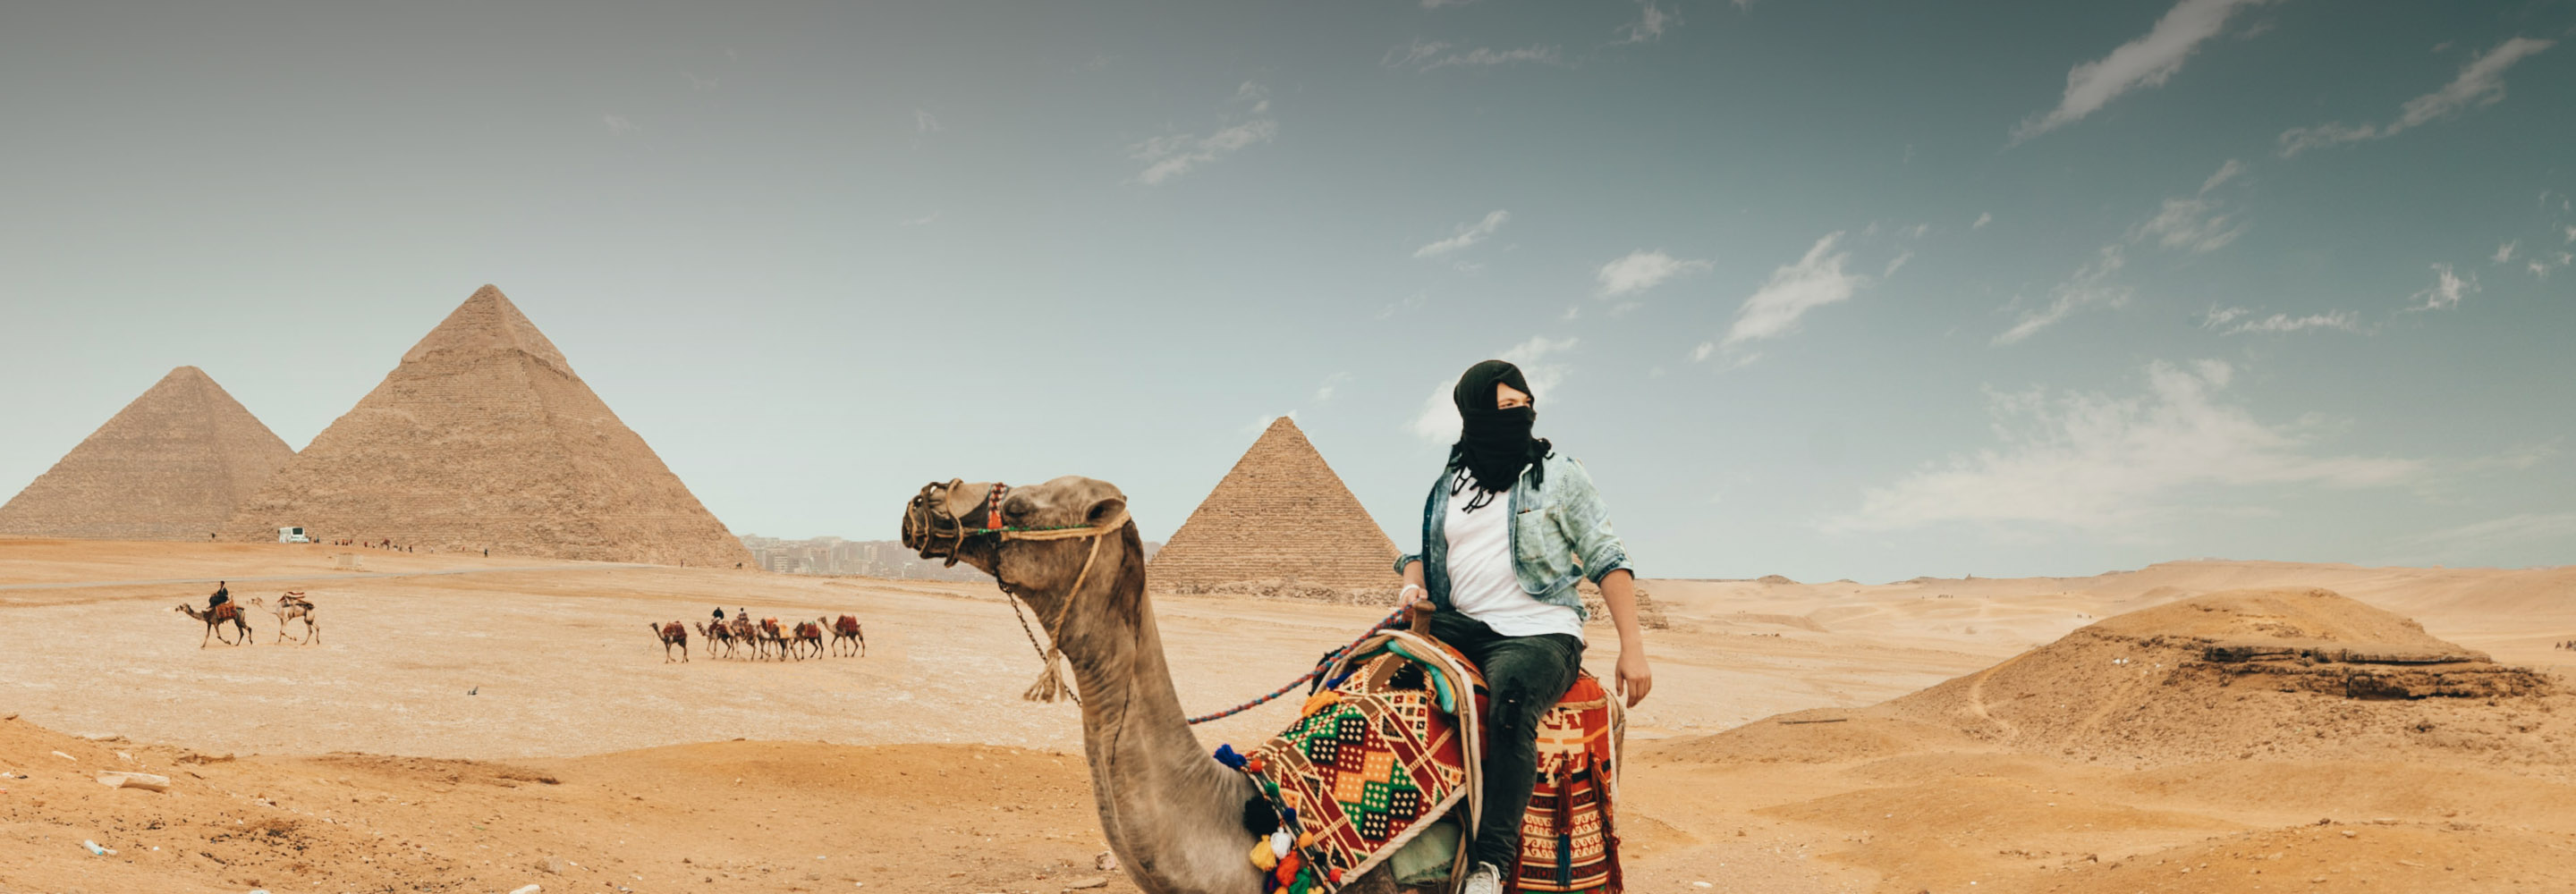 Минусы отдыха в Египте: обман туристов, незнание английского, мусор и  другие недостатки